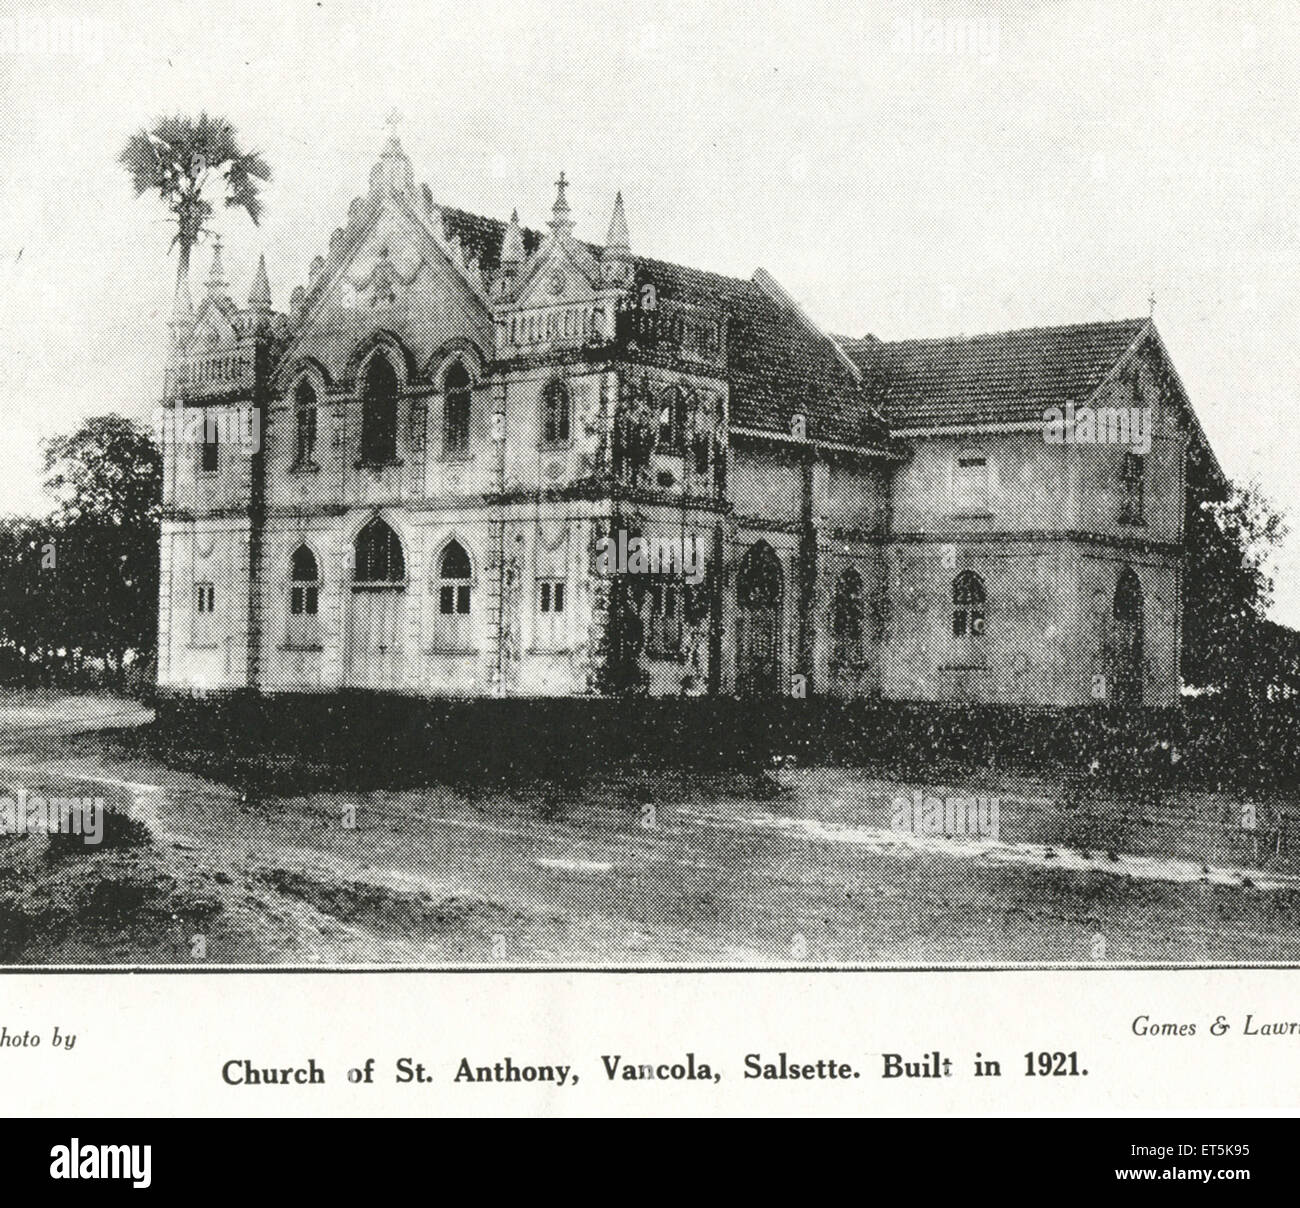 Katholische Gemeinde Kirche des Hl. Antonius; Vancola; Im Jahre 1921 errichtet Salsette; Indien Stockfoto